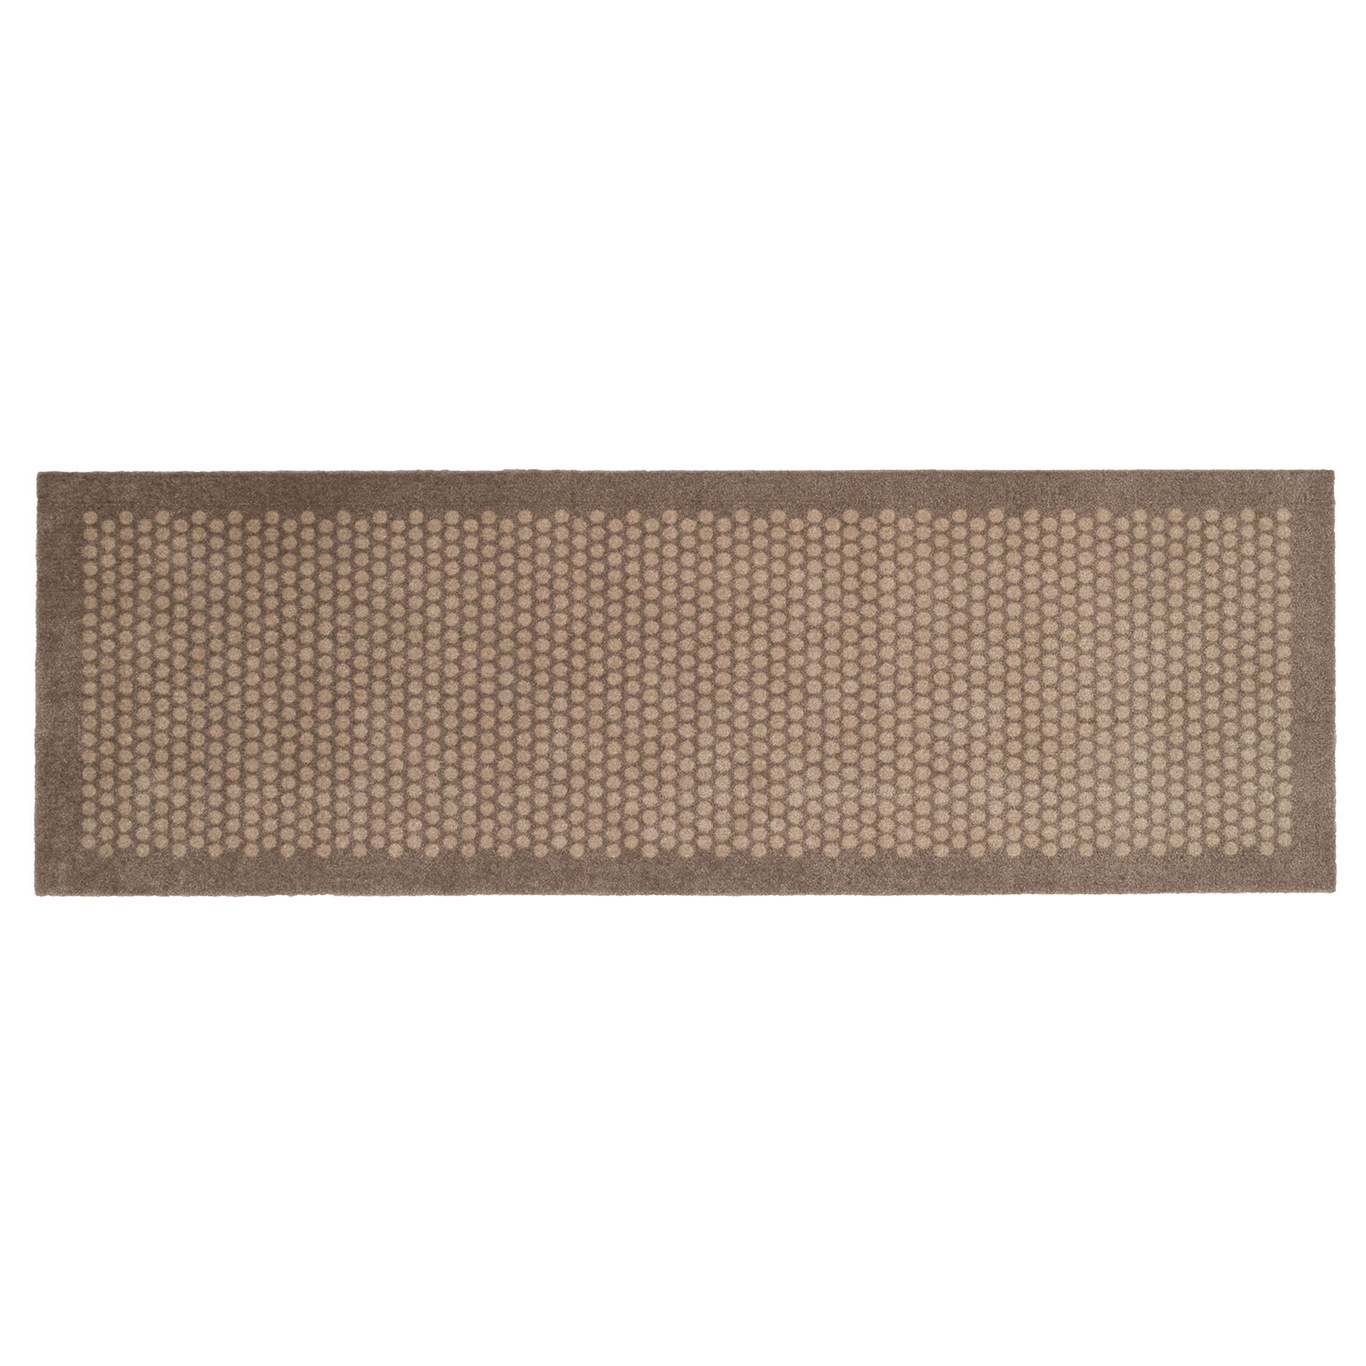 Dot Doormat 67x200cm, Sand